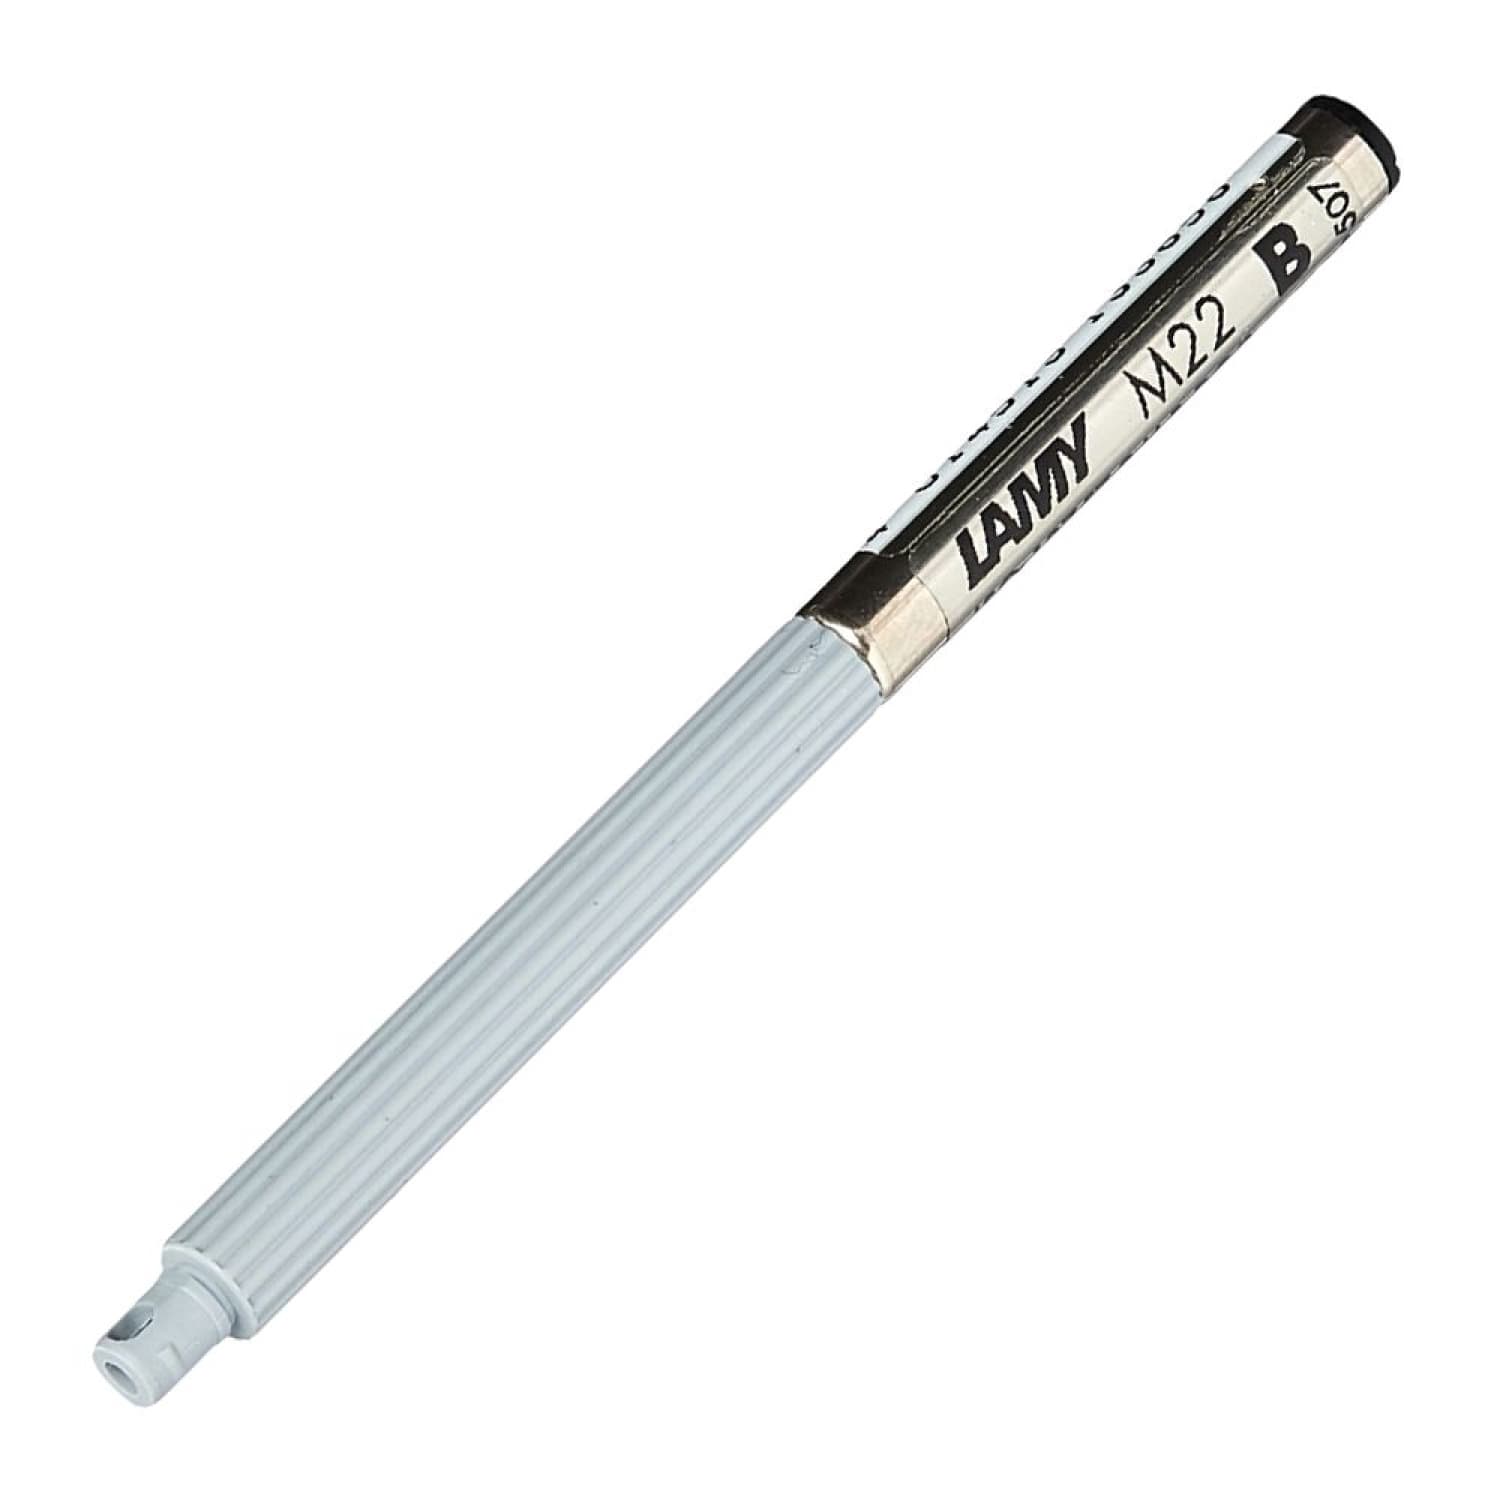 M22 Ballpoint Pen in Black for Scribble Pico - – Goldspot Pens